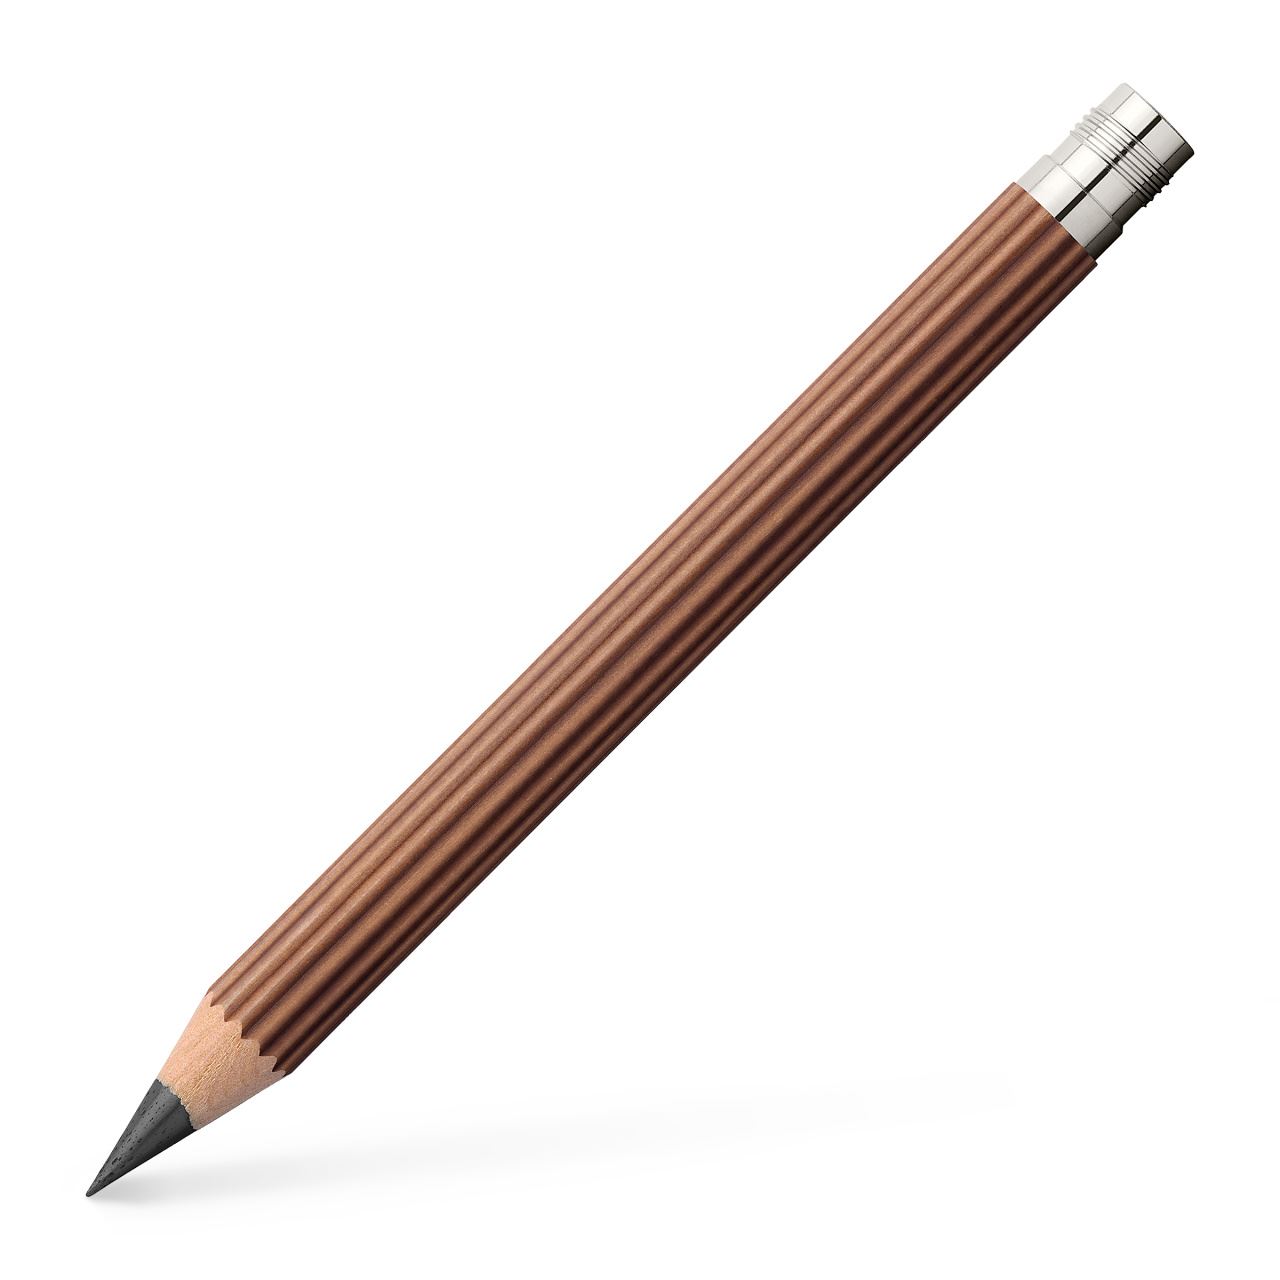 Graf-von-Faber-Castell - Tres lápices de bolsillo en formato mágnum, marrón